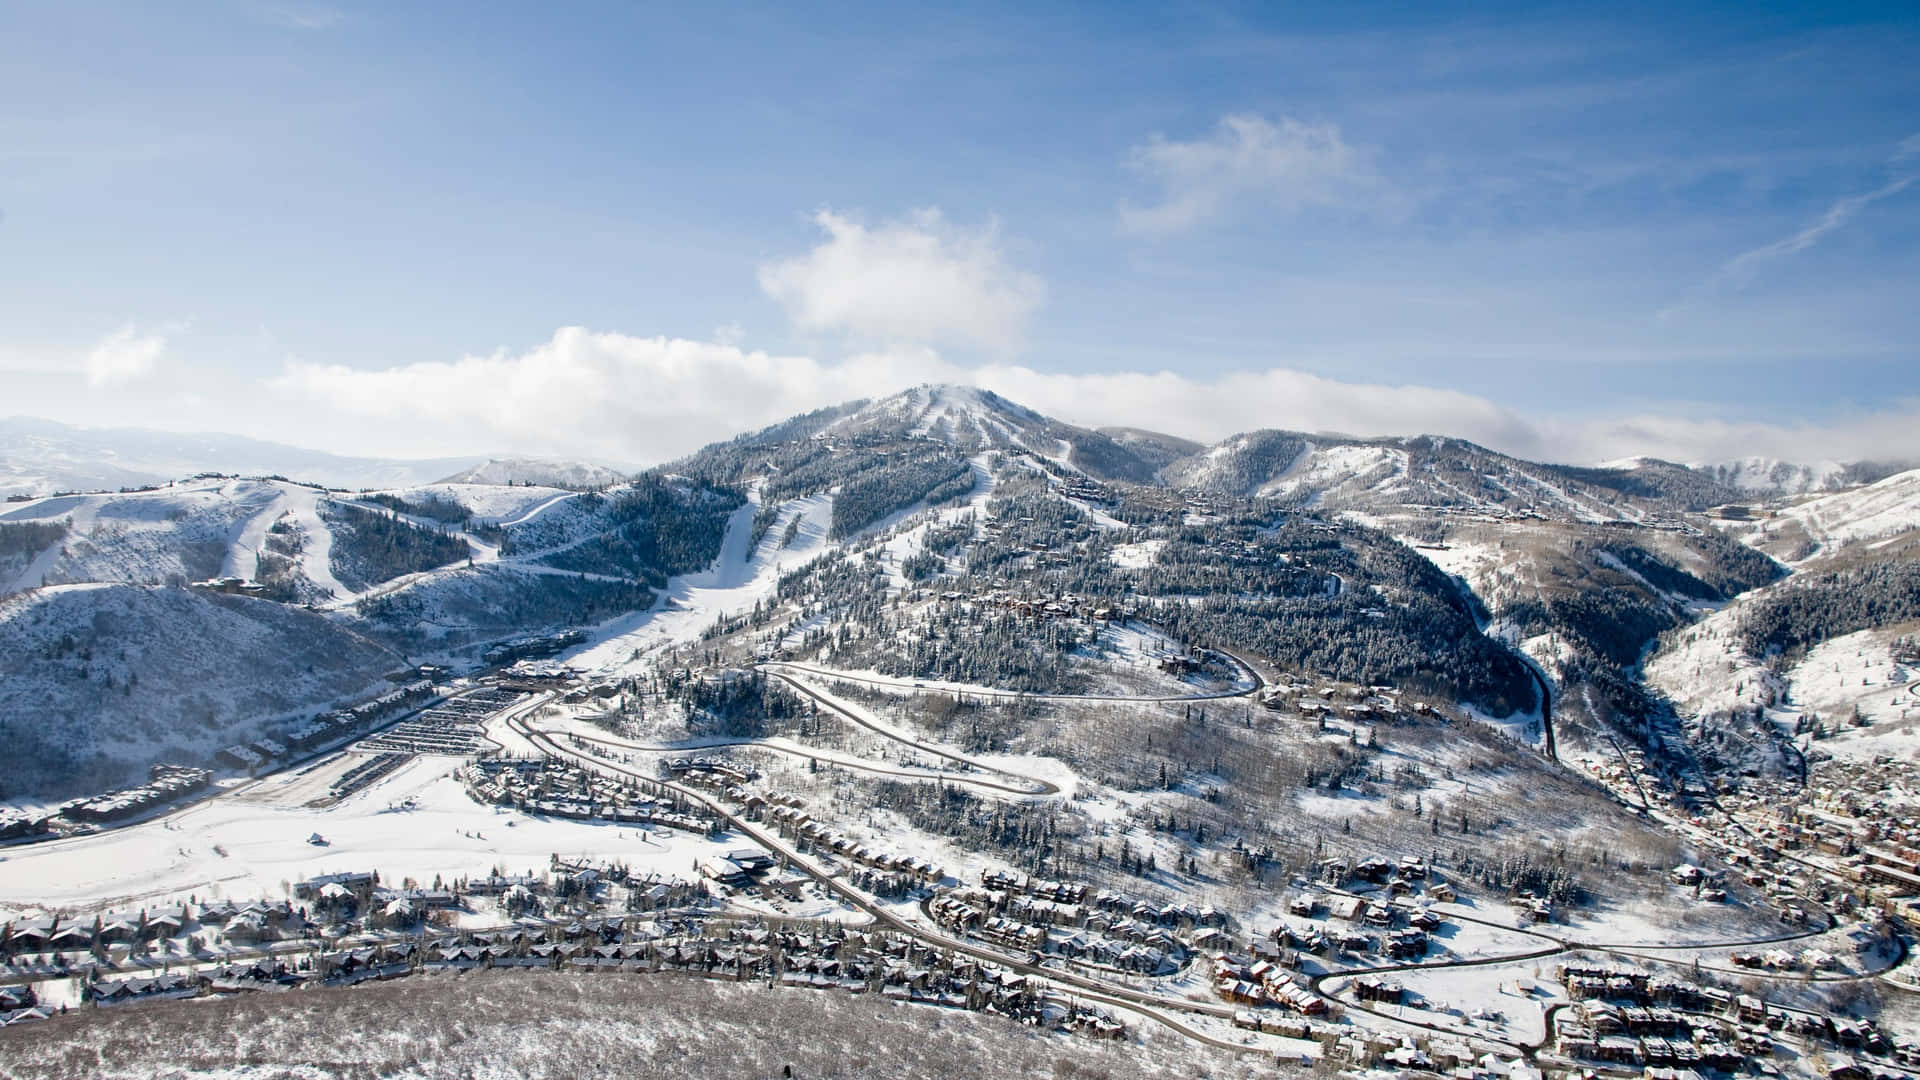 Tag på en forbløffende rejse ned ad ski bagen af et frodigt bjergområde. Wallpaper